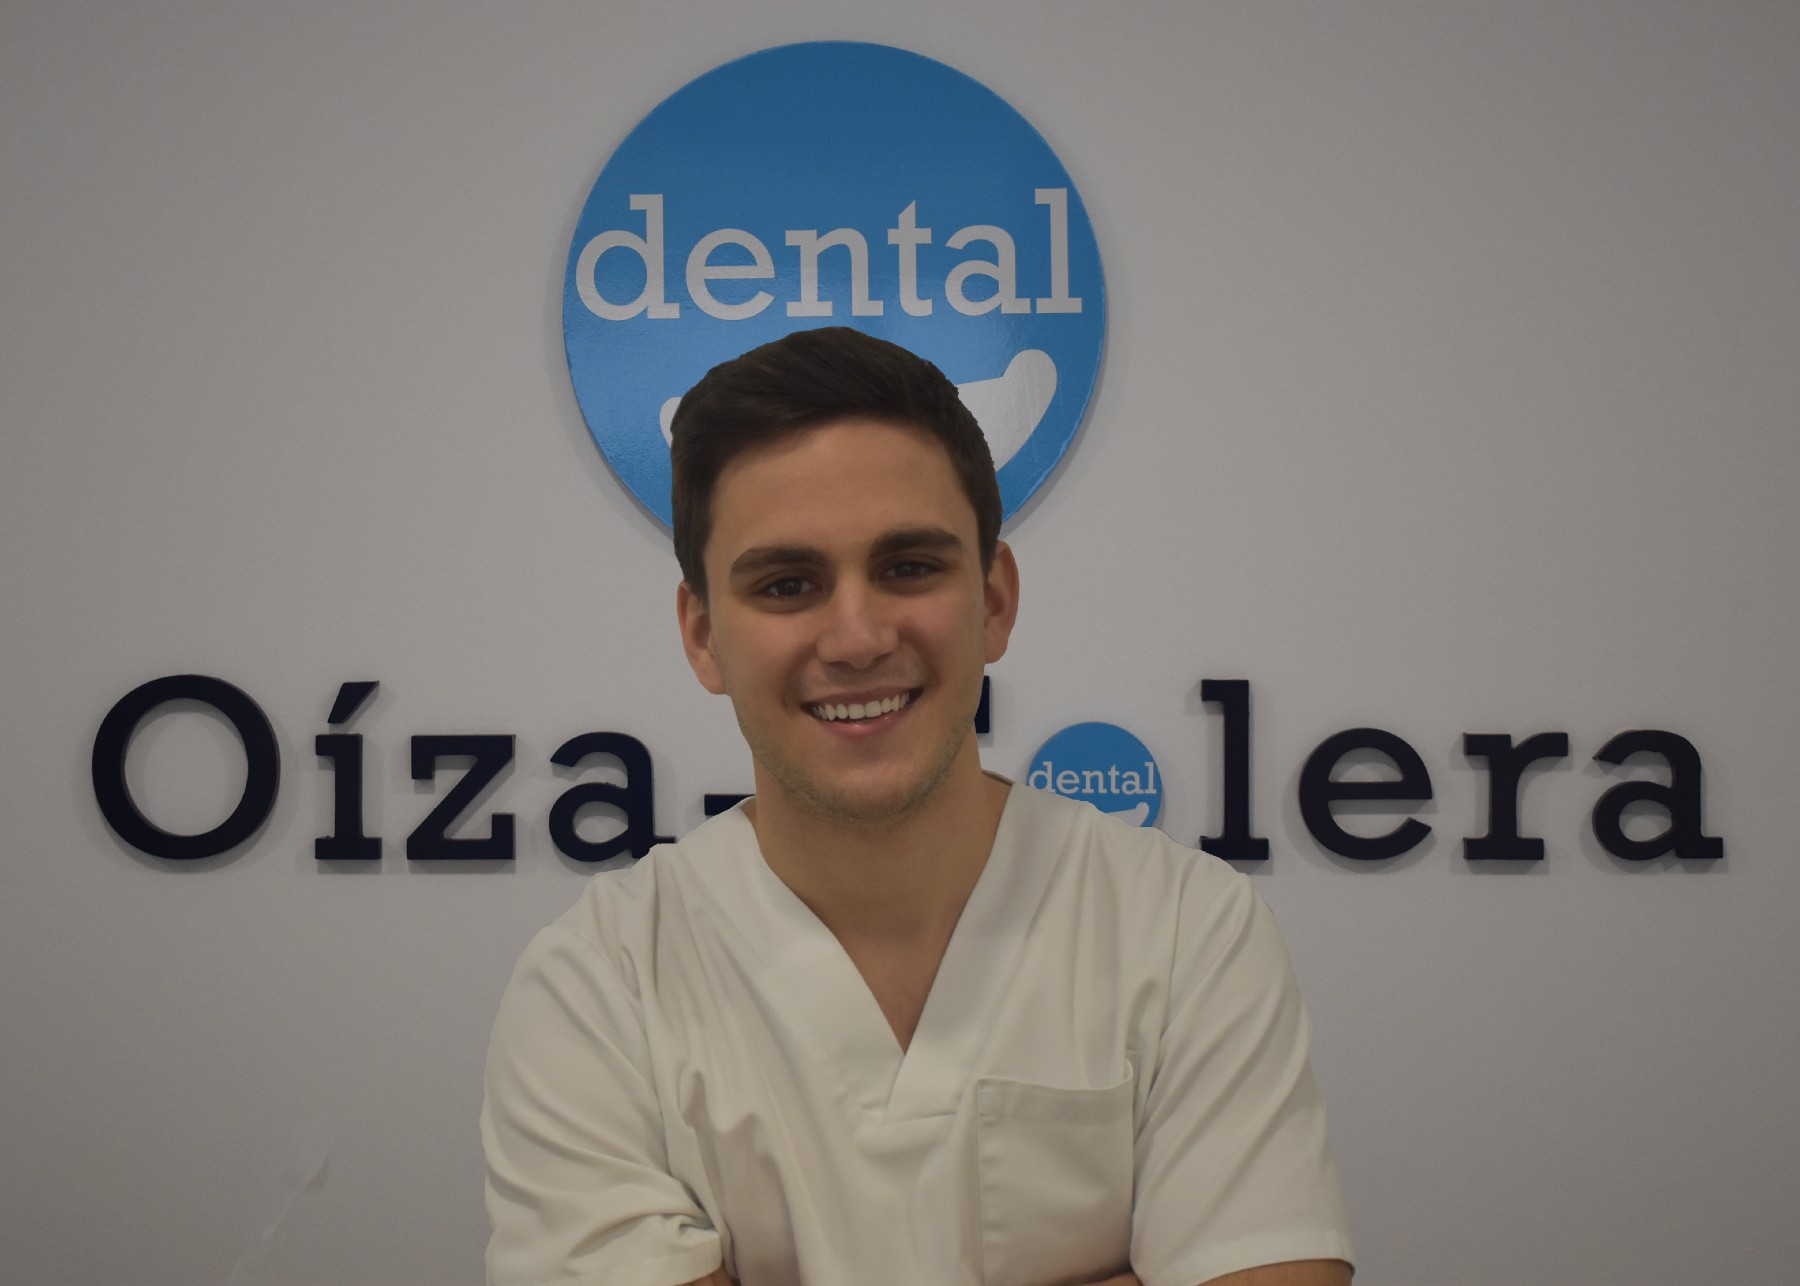 Roberto de la Clínica Dental Oíza-Colera